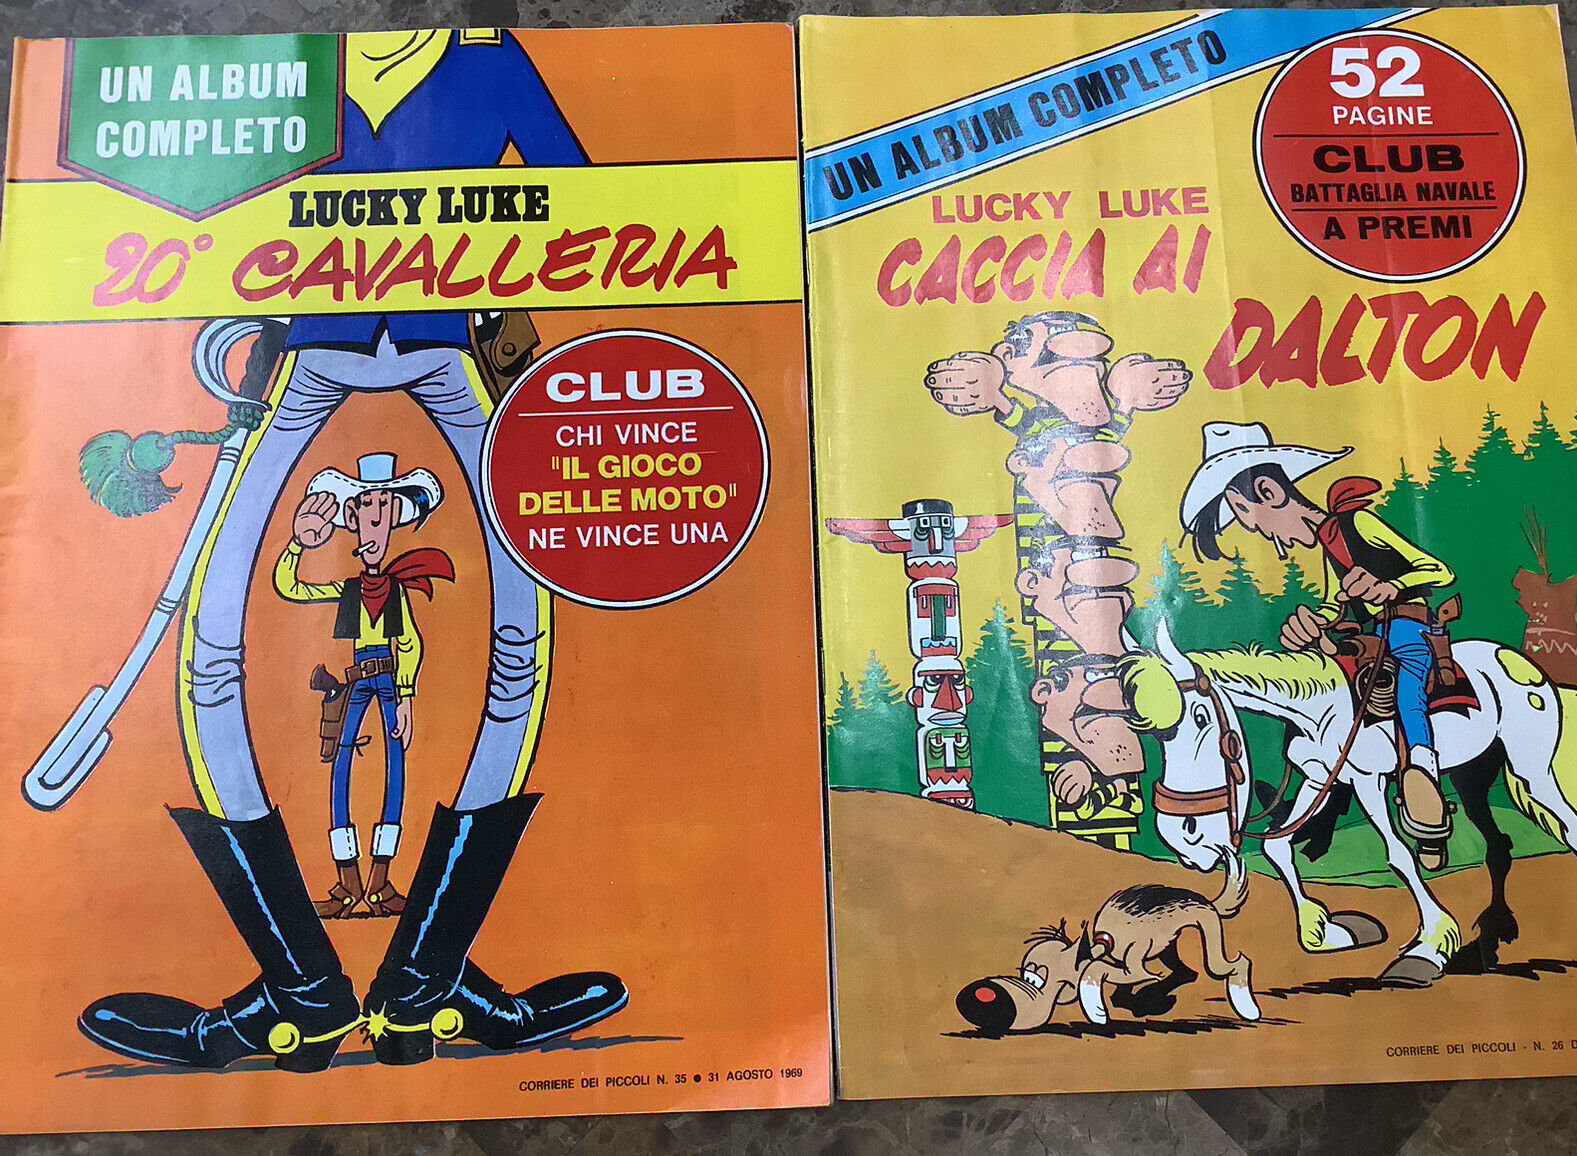 Lucky Luke A Complete Album: Cavalry & Occasion At Dalton 1969 Italian Comics